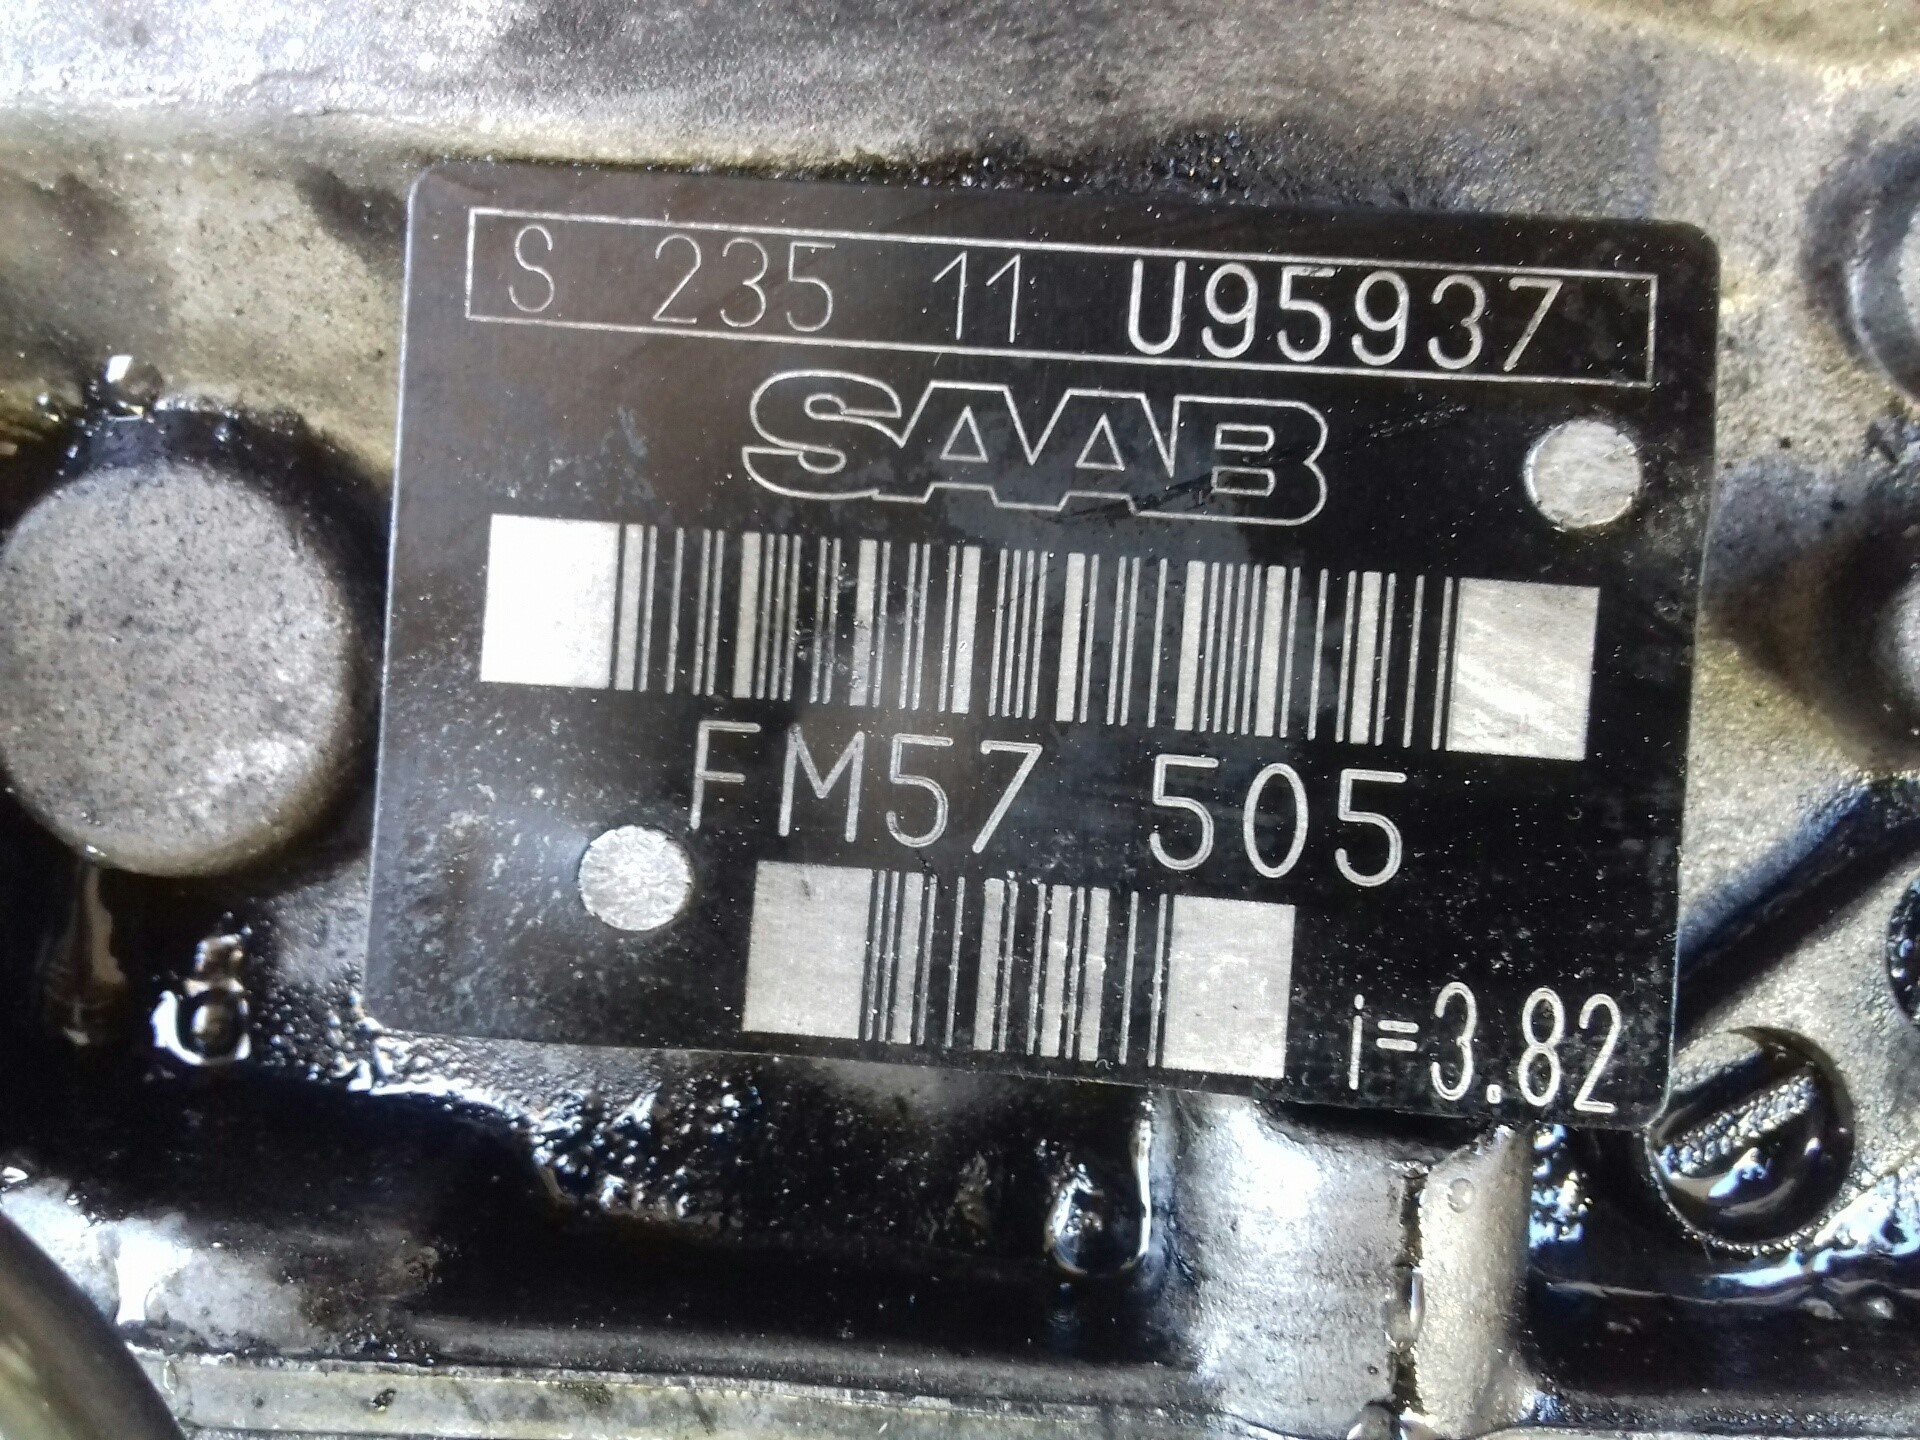 SAAB 93 1 generation (1956-1960) Greičių dėžė (pavarų dėžė) FM57505, MANUAL, S23511U95937 18382945